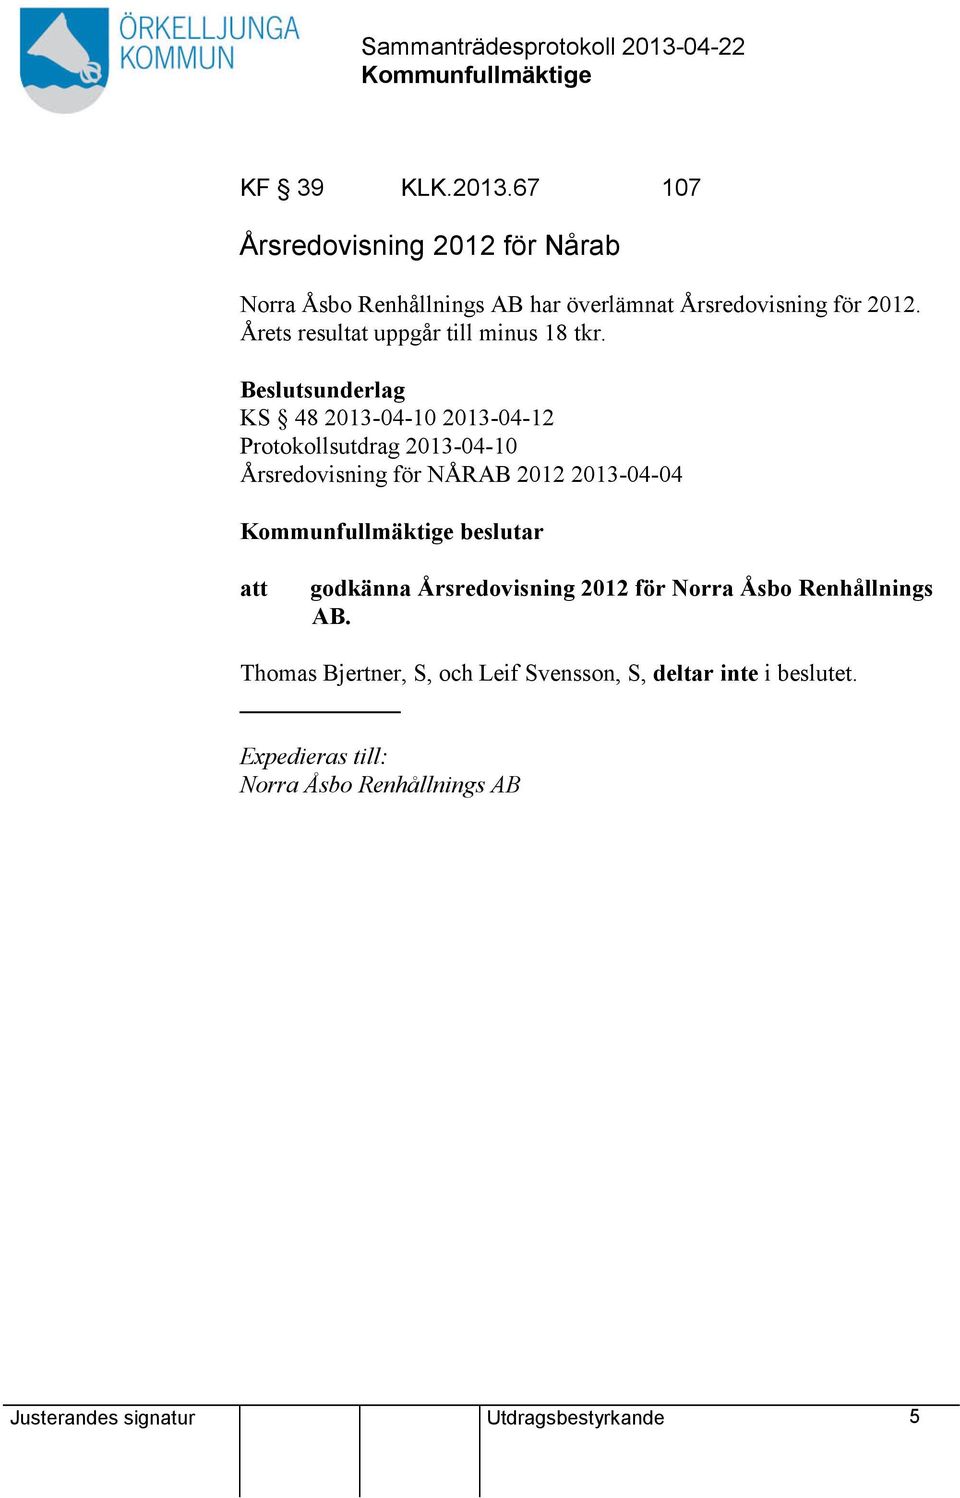 Beslutsunderlag KS 48 2013-04-10 2013-04-12 Protokollsutdrag 2013-04-10 Årsredovisning för NÅRAB 2012 2013-04-04 beslutar